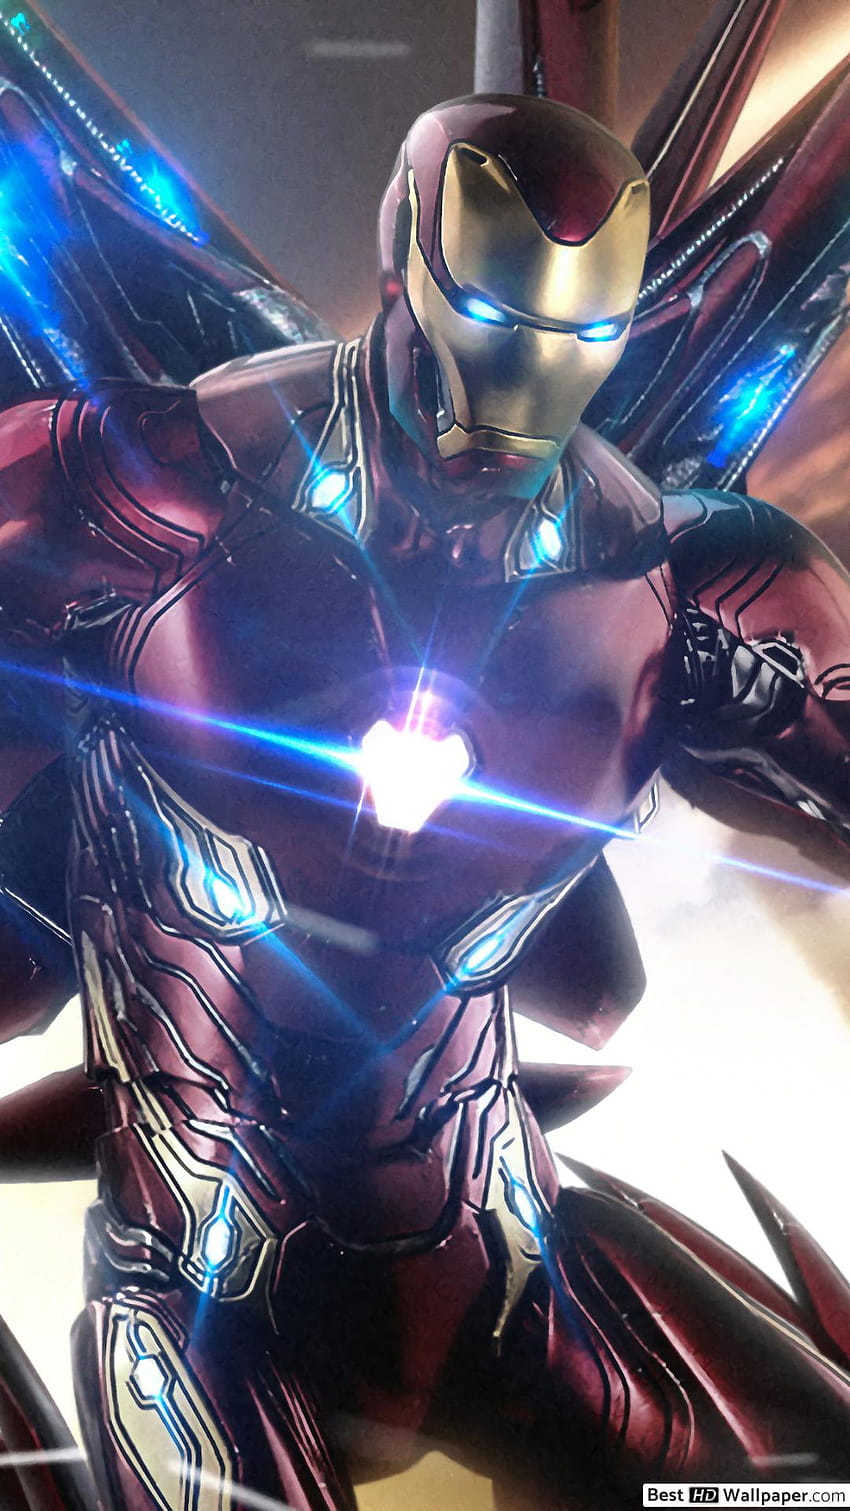 Avengers: Endgame Wallpaper 4K, Captain America, Iron Man